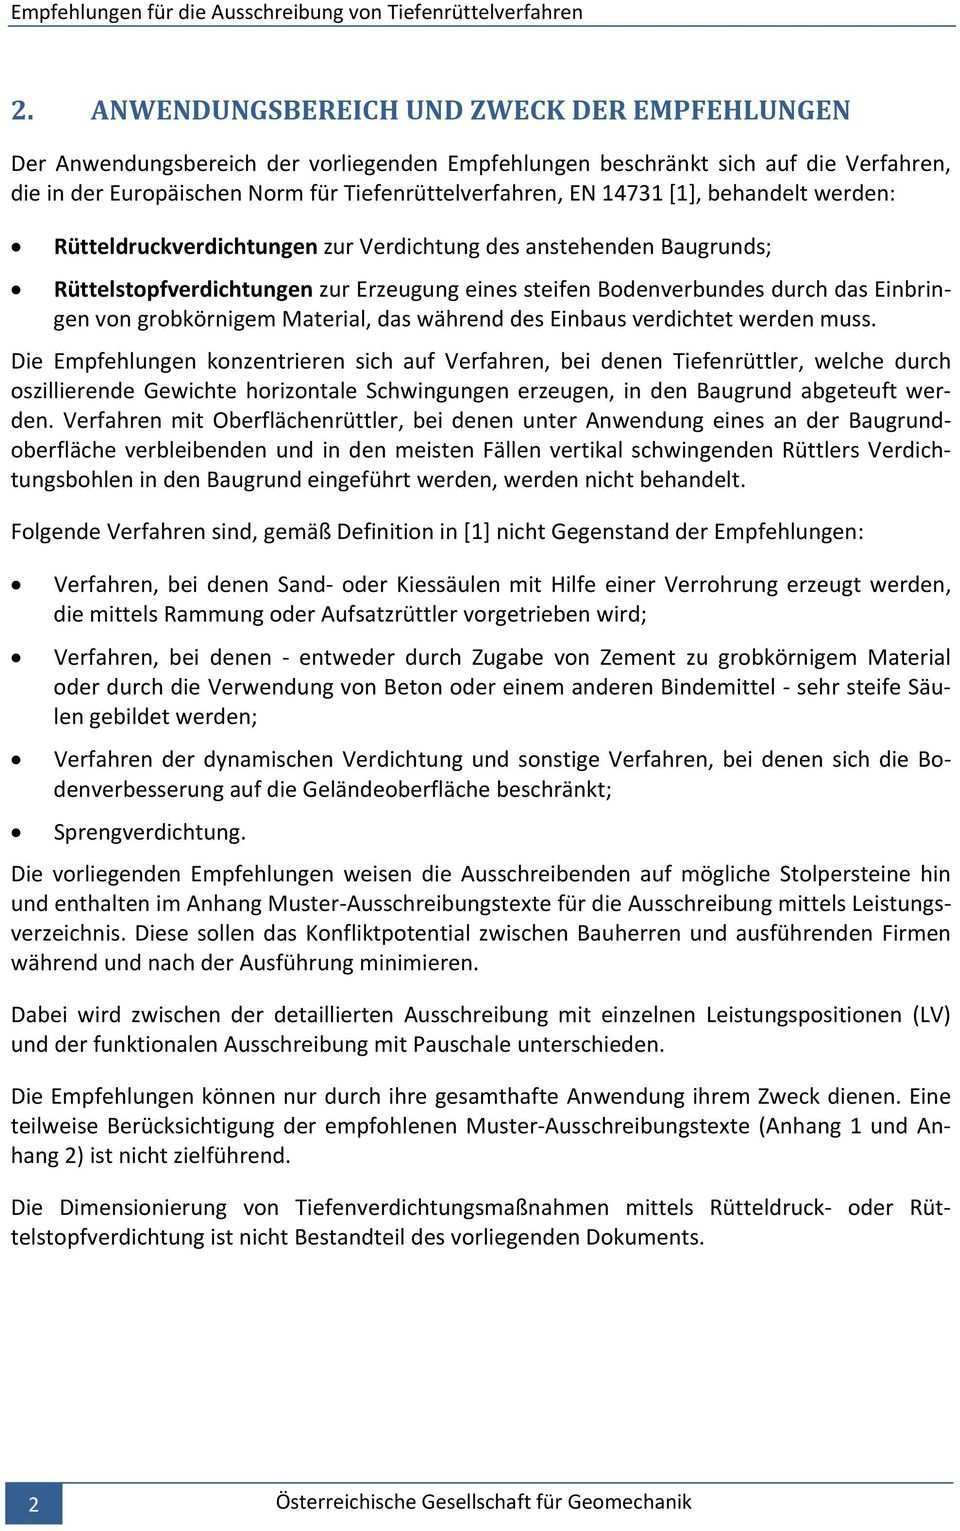 Handbuch Empfehlungen Fur Die Ausschreibung Von Tiefenruttelverfahren Ruttelstopf Rutteldruckverdichtung Pdf Kostenfreier Download